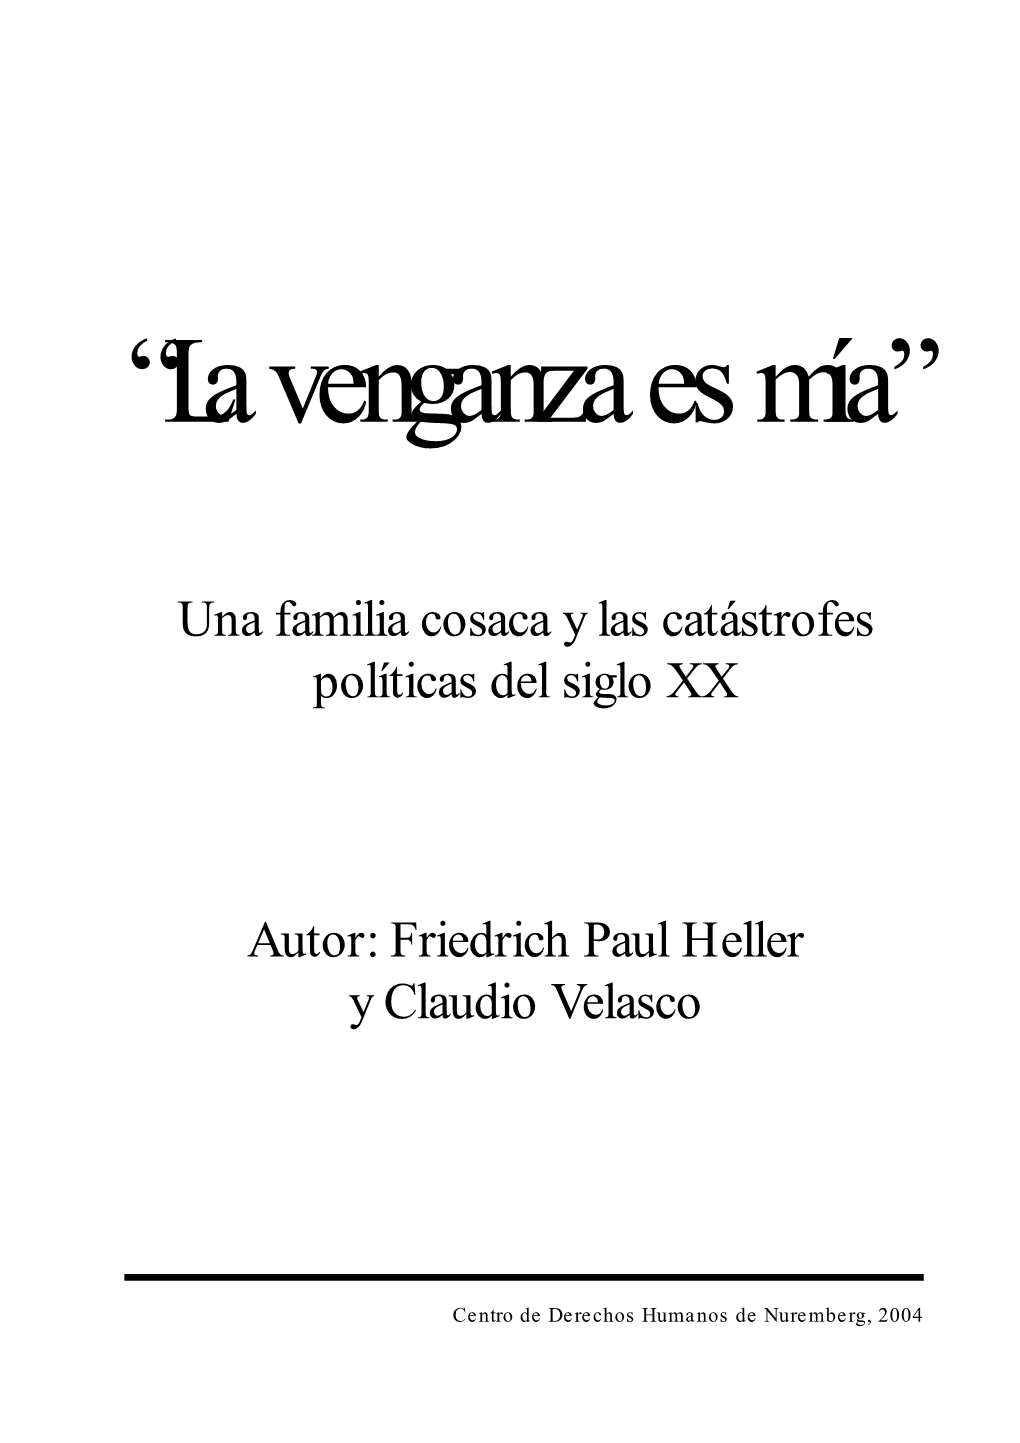 Una Familia Cosaca Y Las Catástrofes Políticas Del Siglo XX Autor